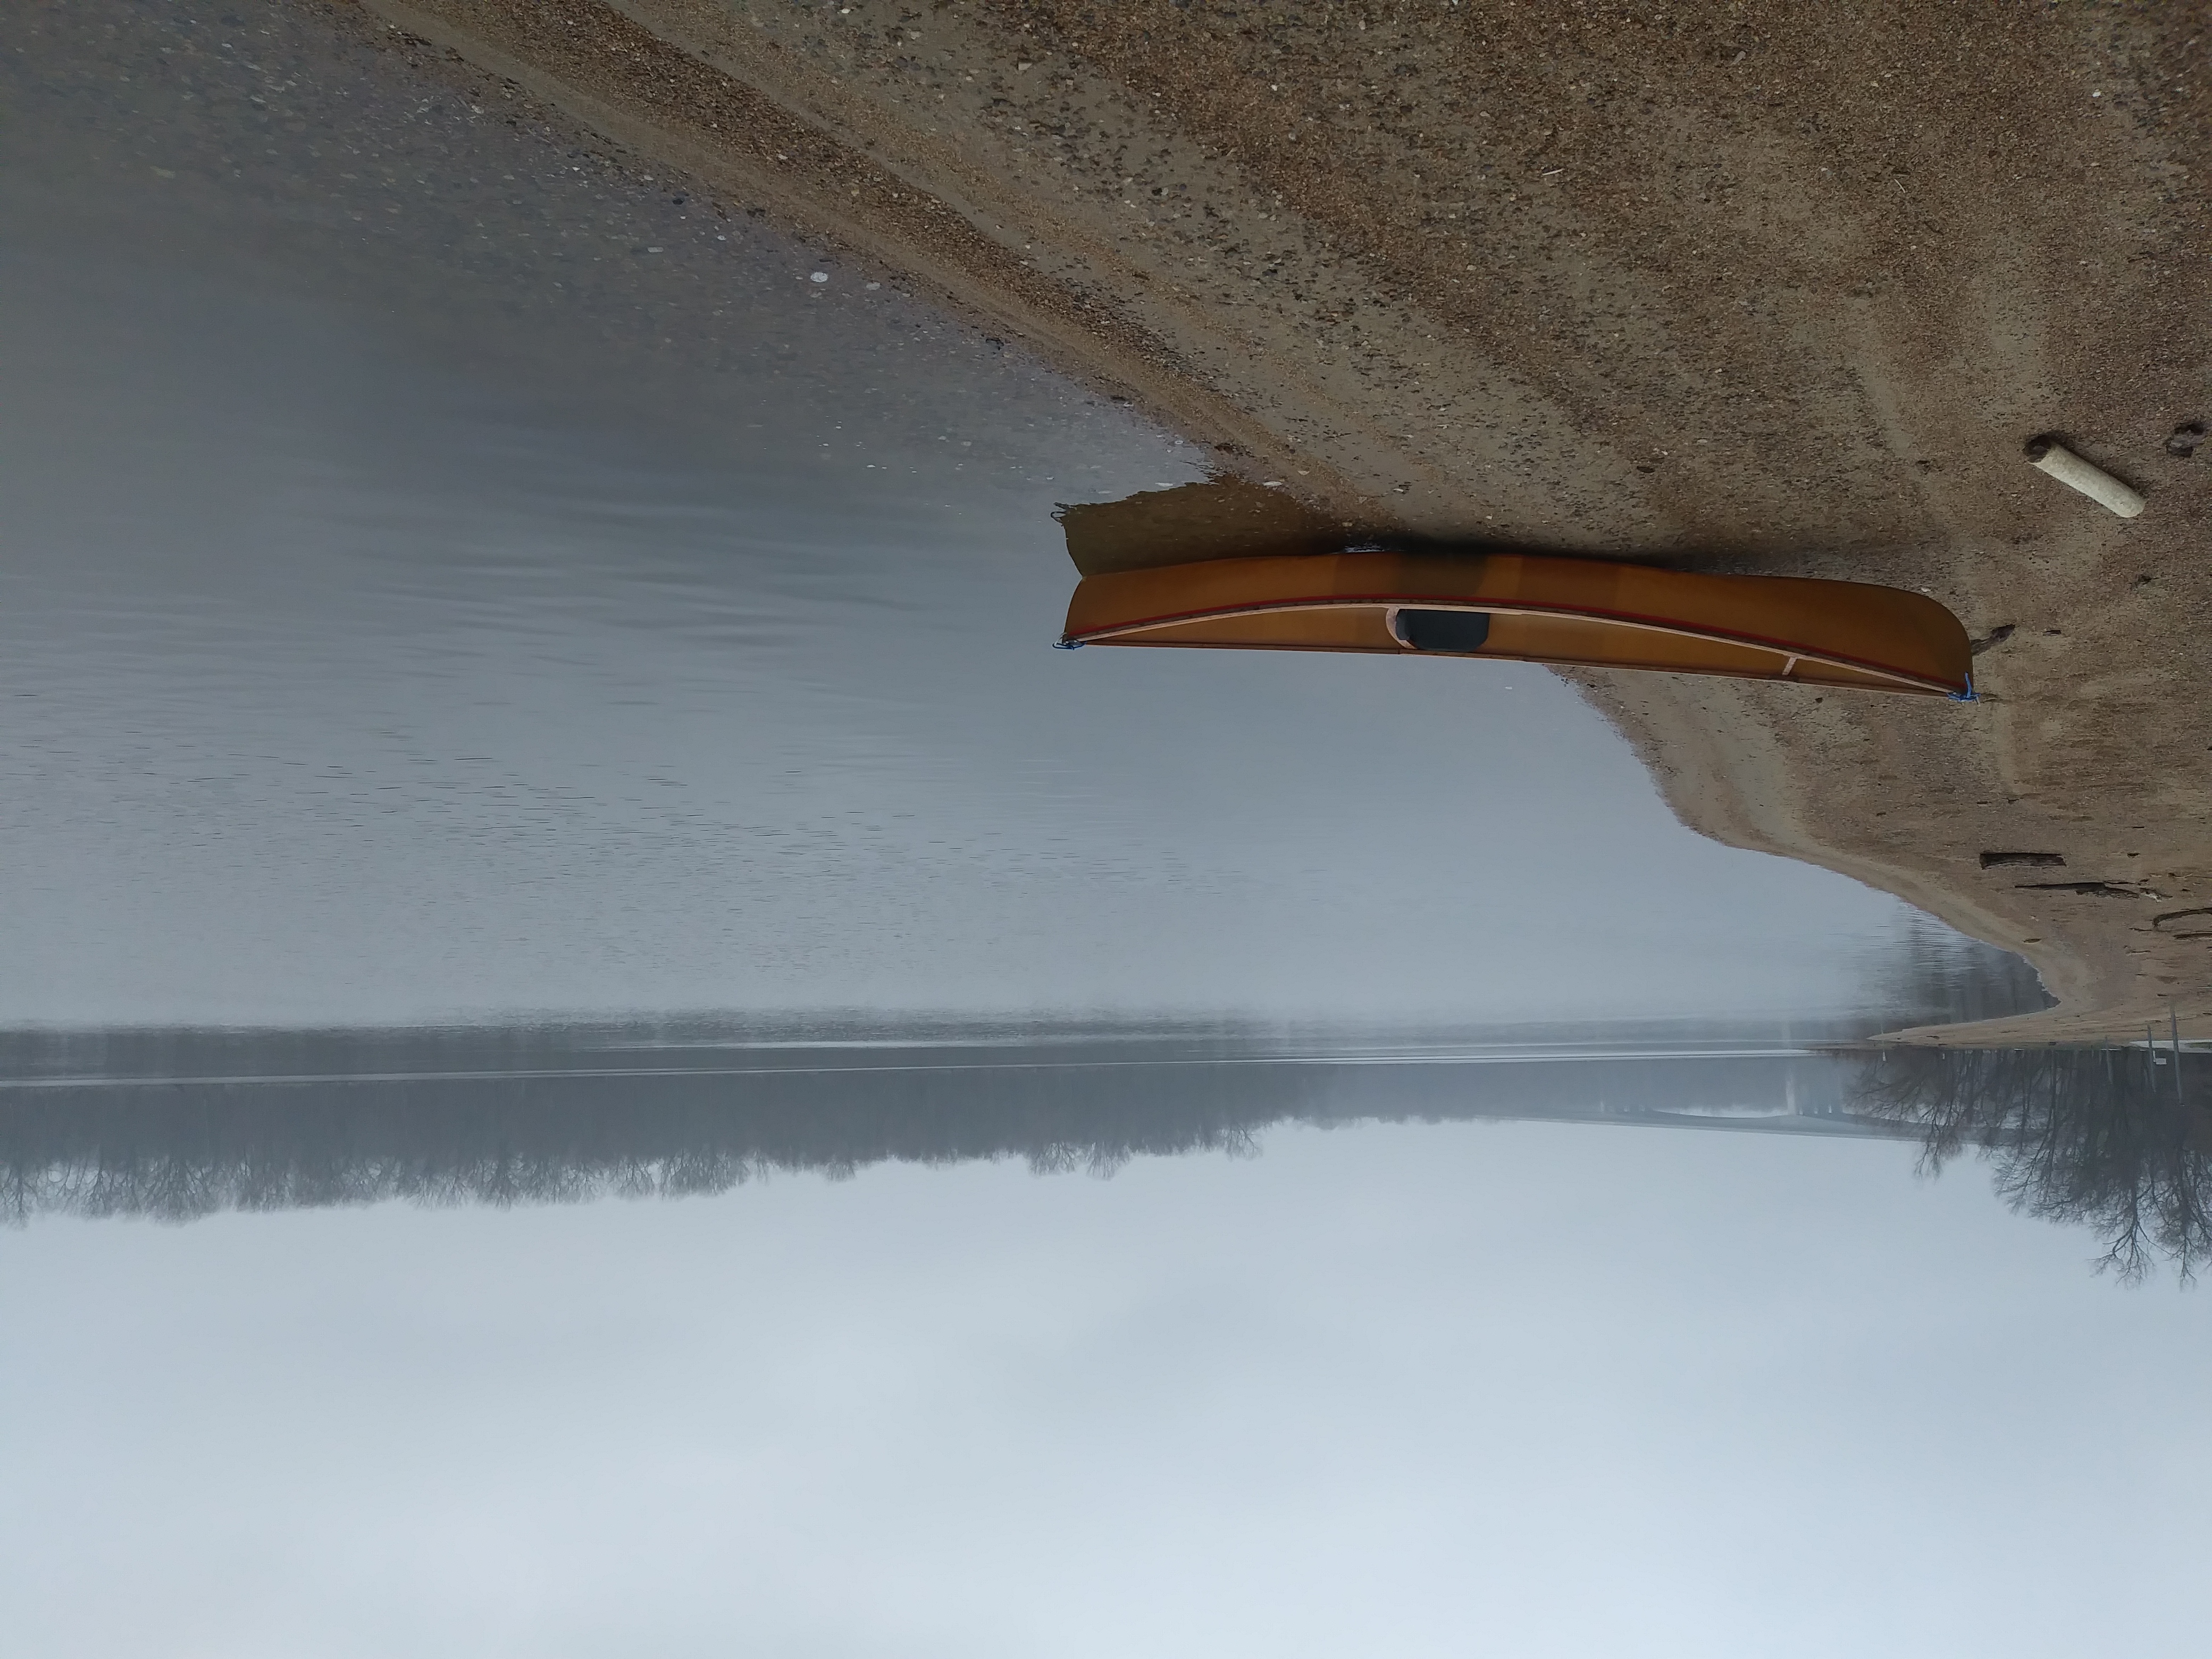 Canoe in winter. Photo from Joan Twillman.